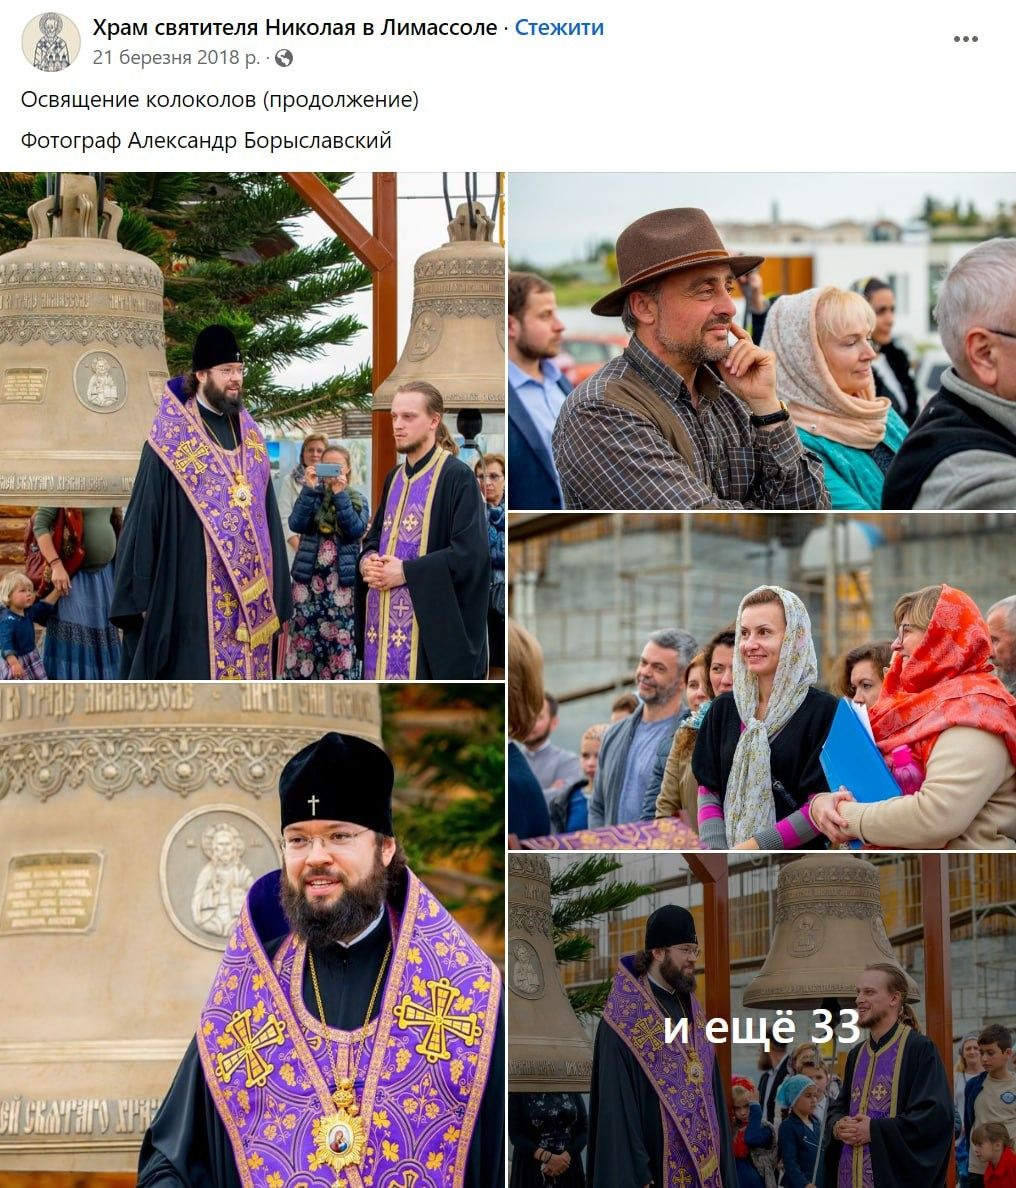 СПЖ офшорний: як російська парафія на Кіпрі стала прихистком для священників УПЦ - фото 124715